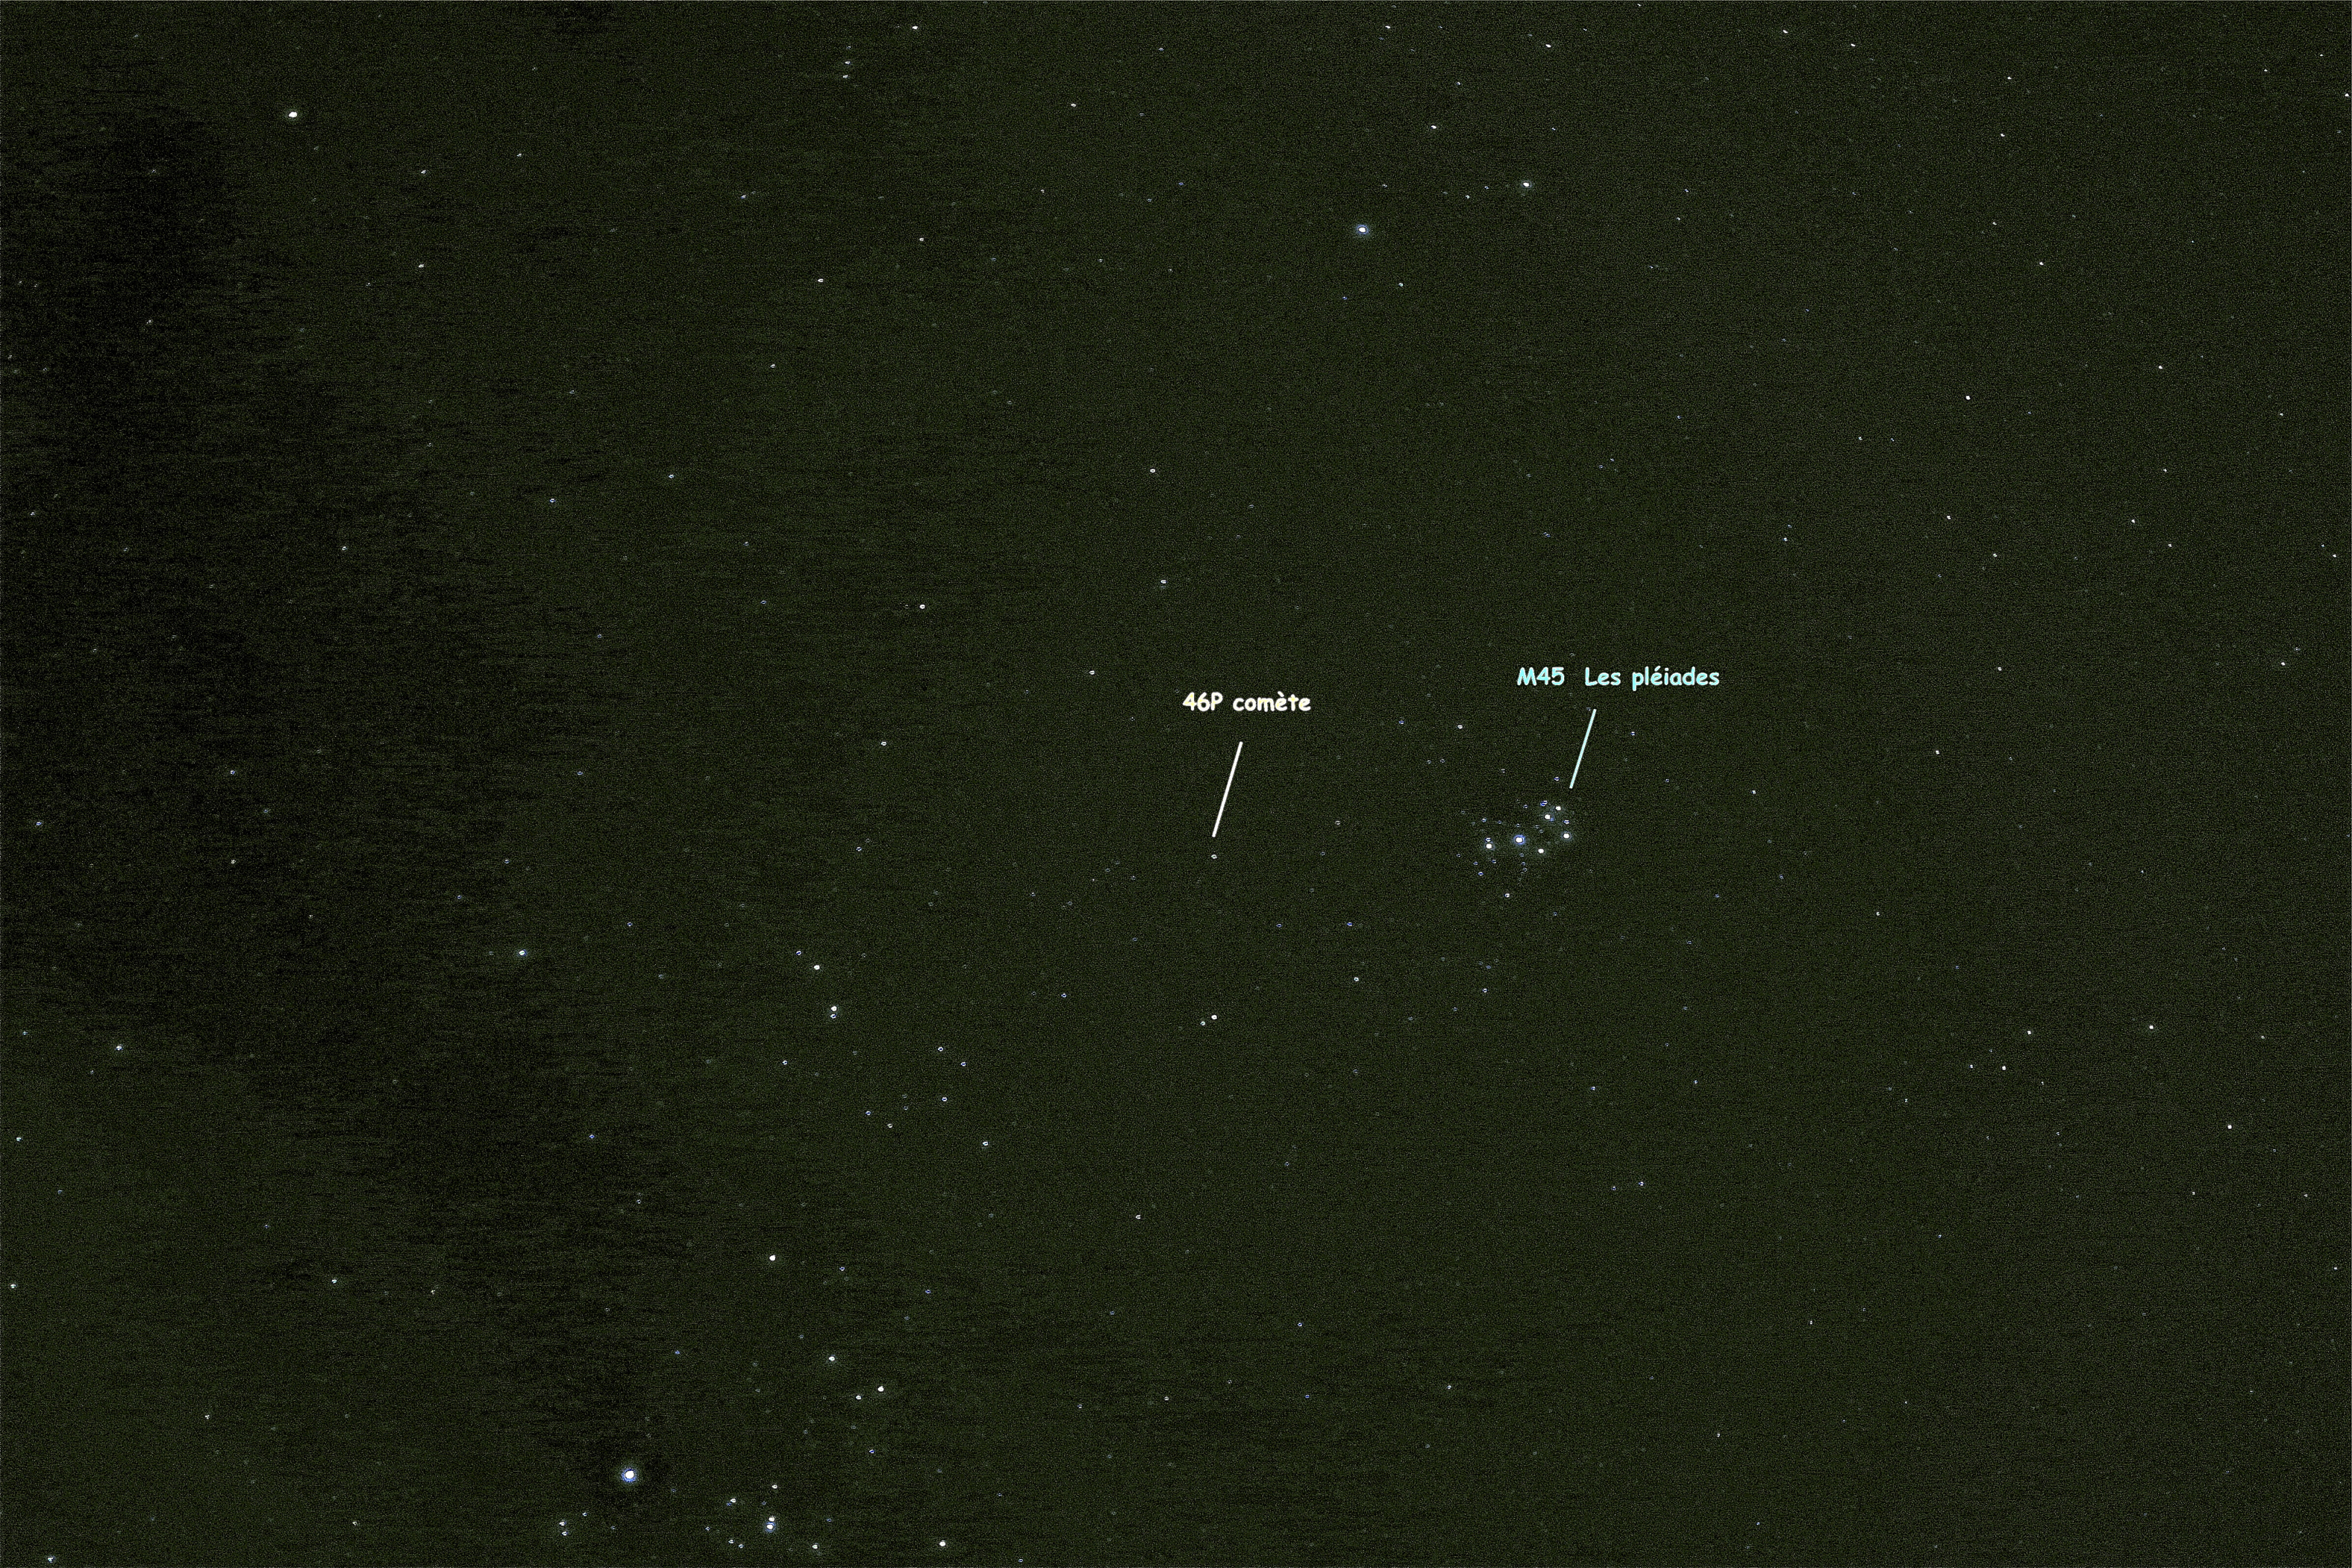 Comète 46P et M45 Les Pléiades 26 dec 2018